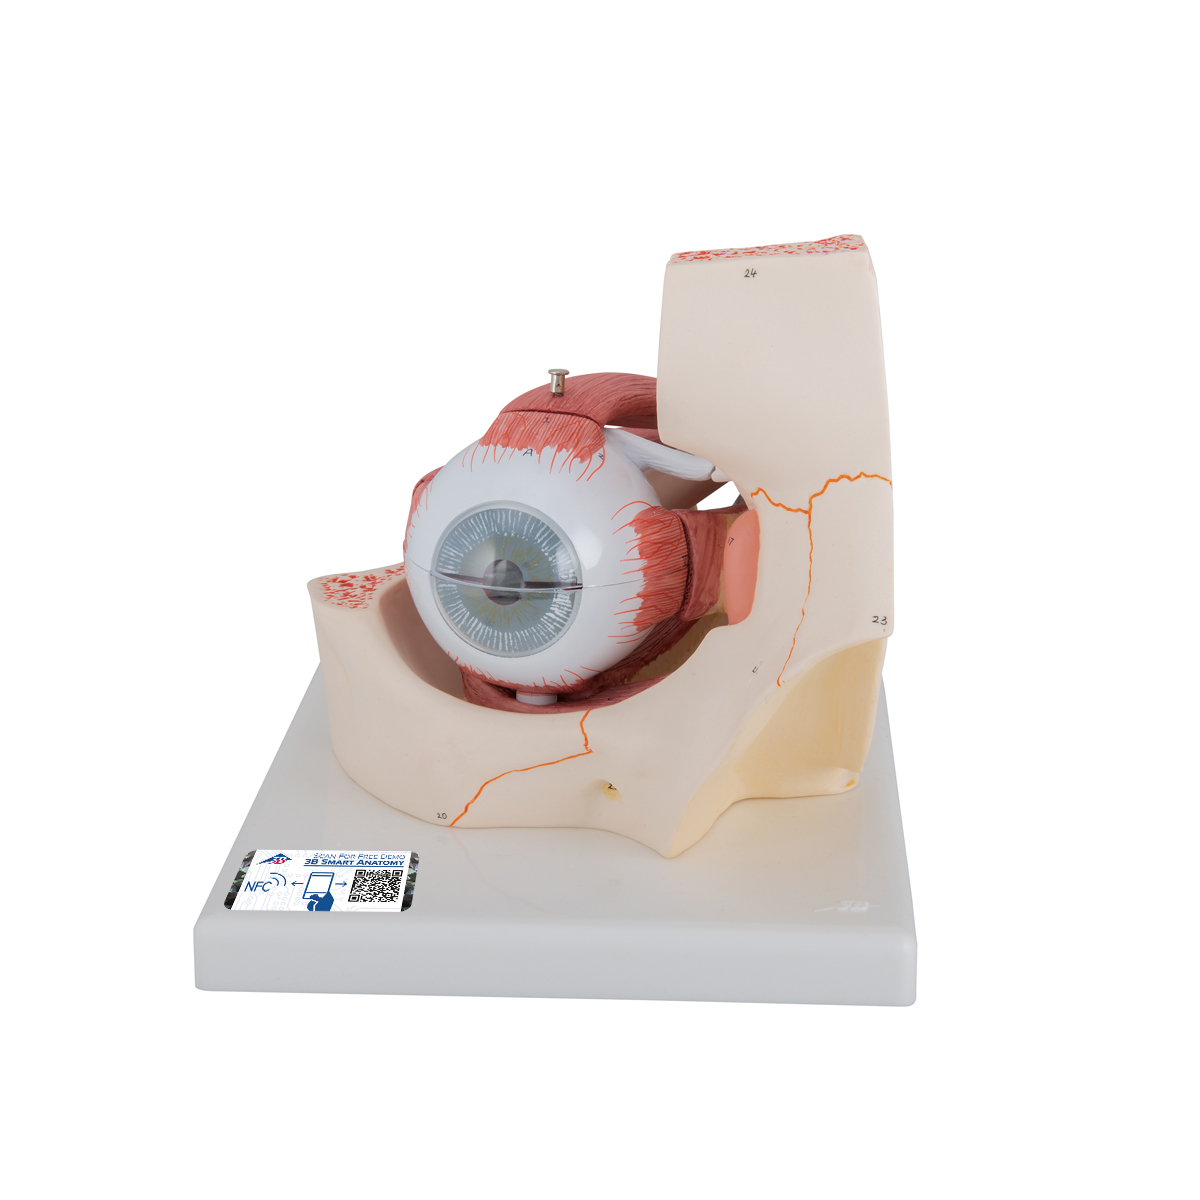 Modell vom Auge in Augenhöhle, 3-fache Größe, 7-teilig - 3B Smart Anatomy, Bestellnummer 1000258, F13, 3B Scientific